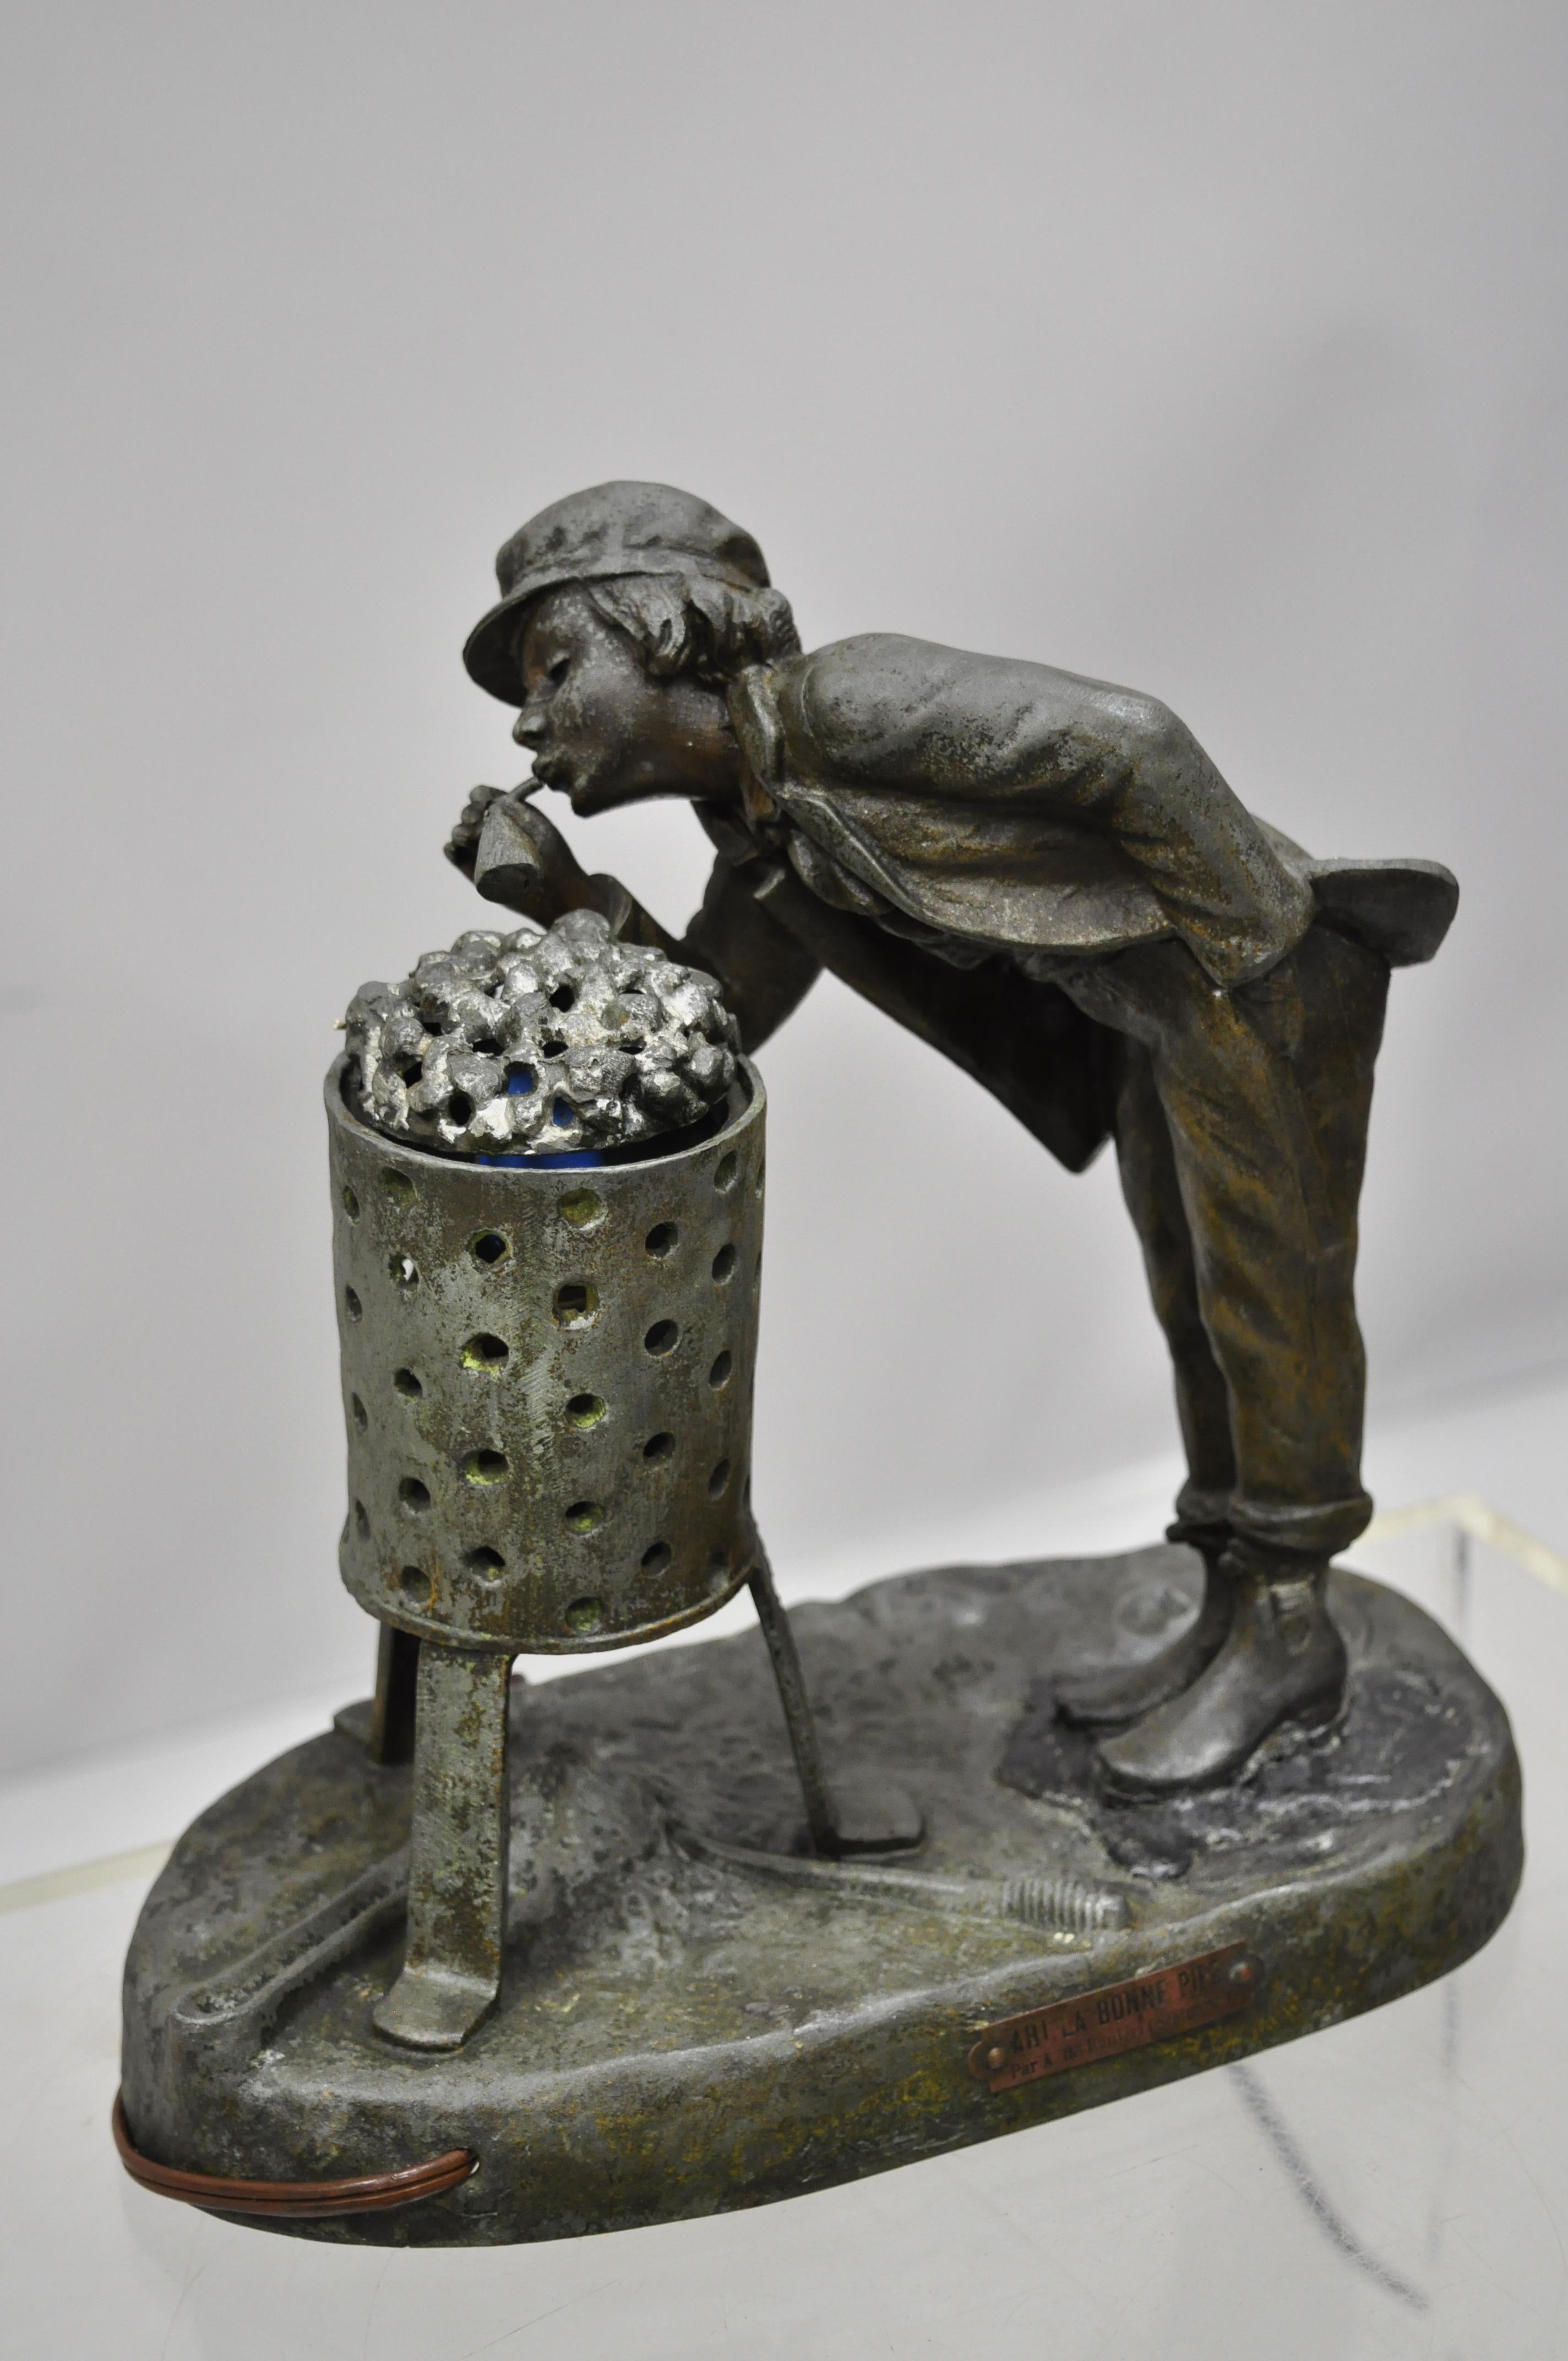 Lampe ancienne figurative en métal Spelter Ahi La Bonne pipe Ranieri statue Art Déco (B). L'objet comprend une construction en métal spelter, une plaque sur le devant indiquant 